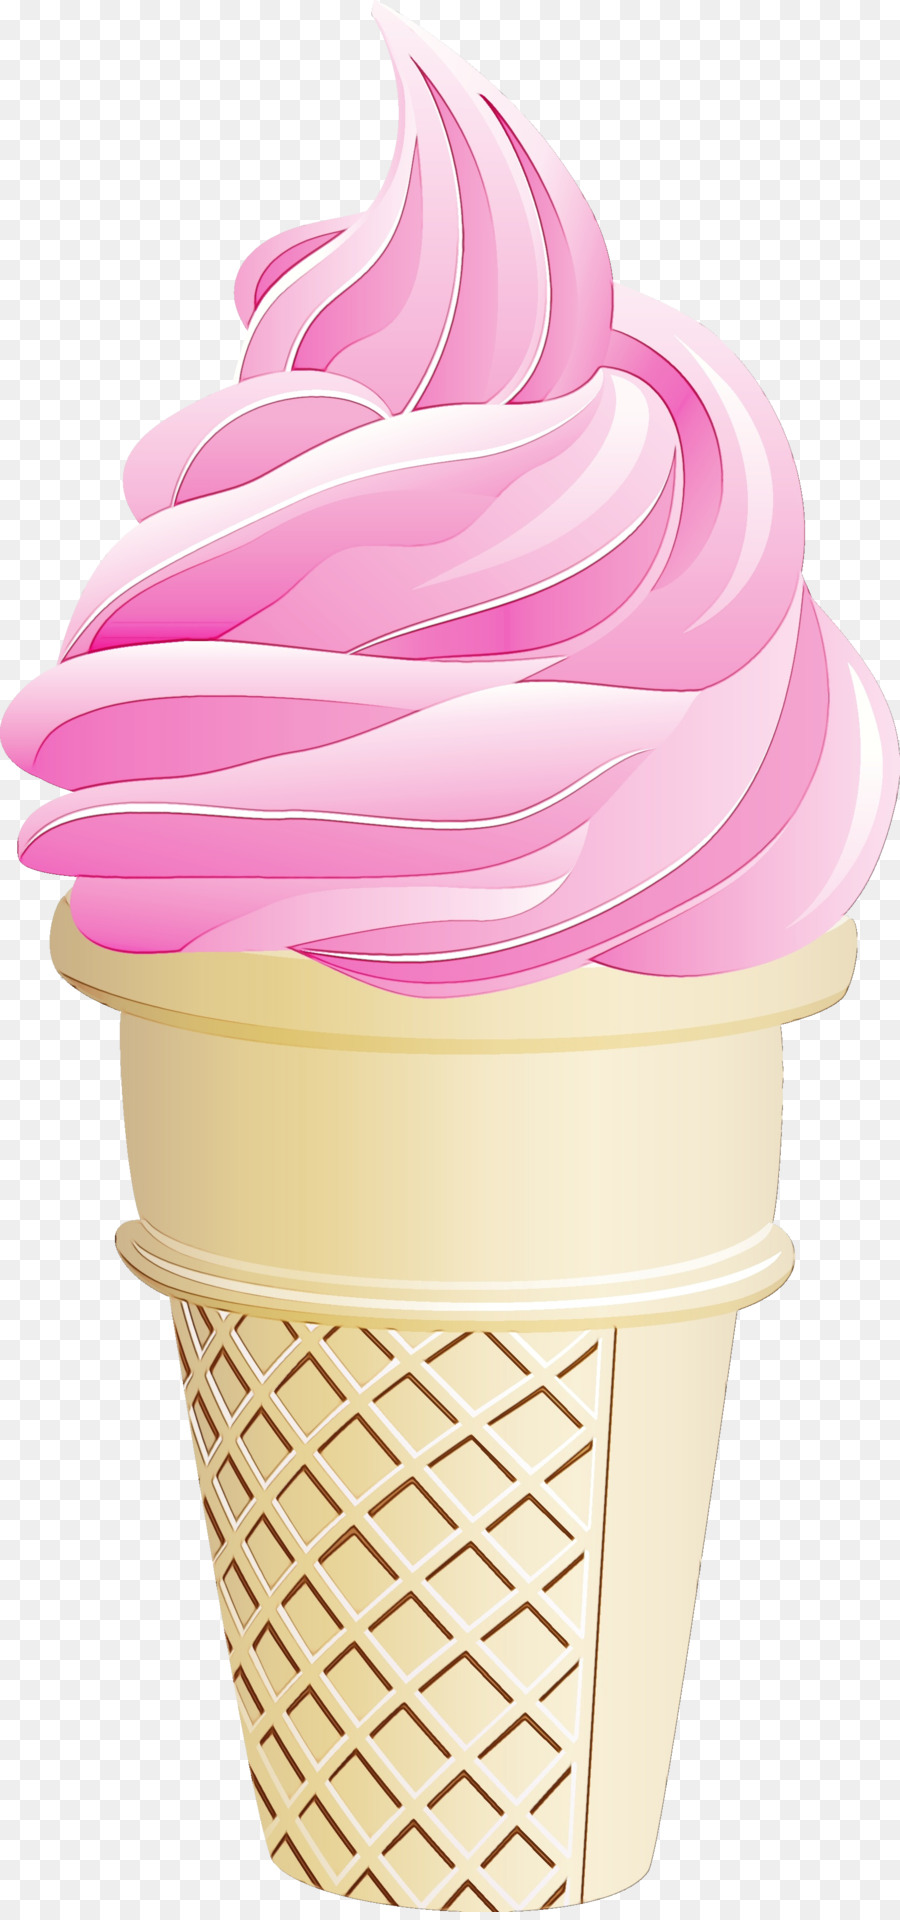 Coni gelato Clip art Portable Network Graphics - 